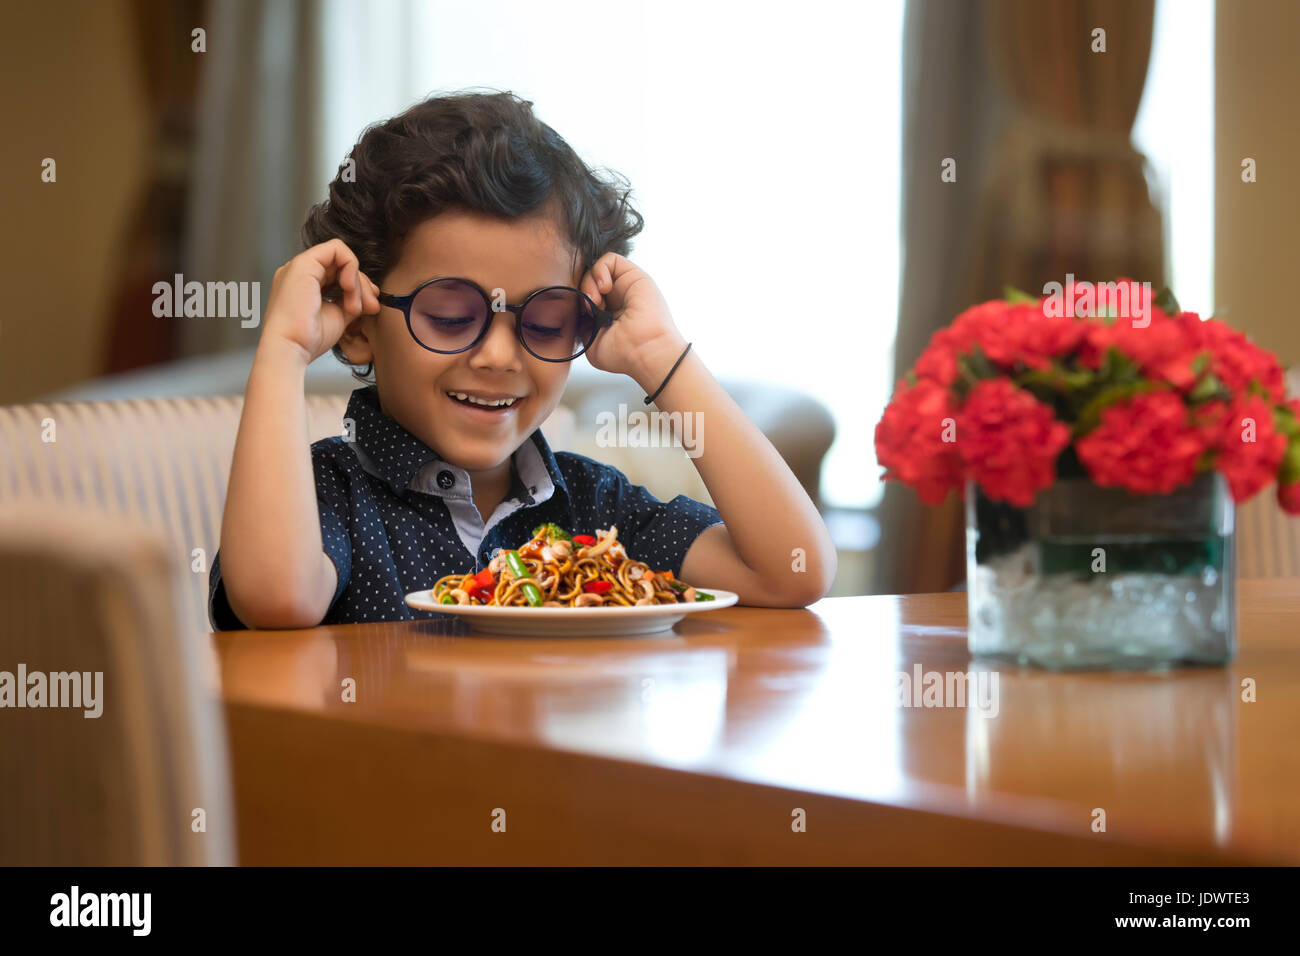 Primo piano del ragazzo sorridente con piastra di tagliatelle sul tavolo Foto Stock